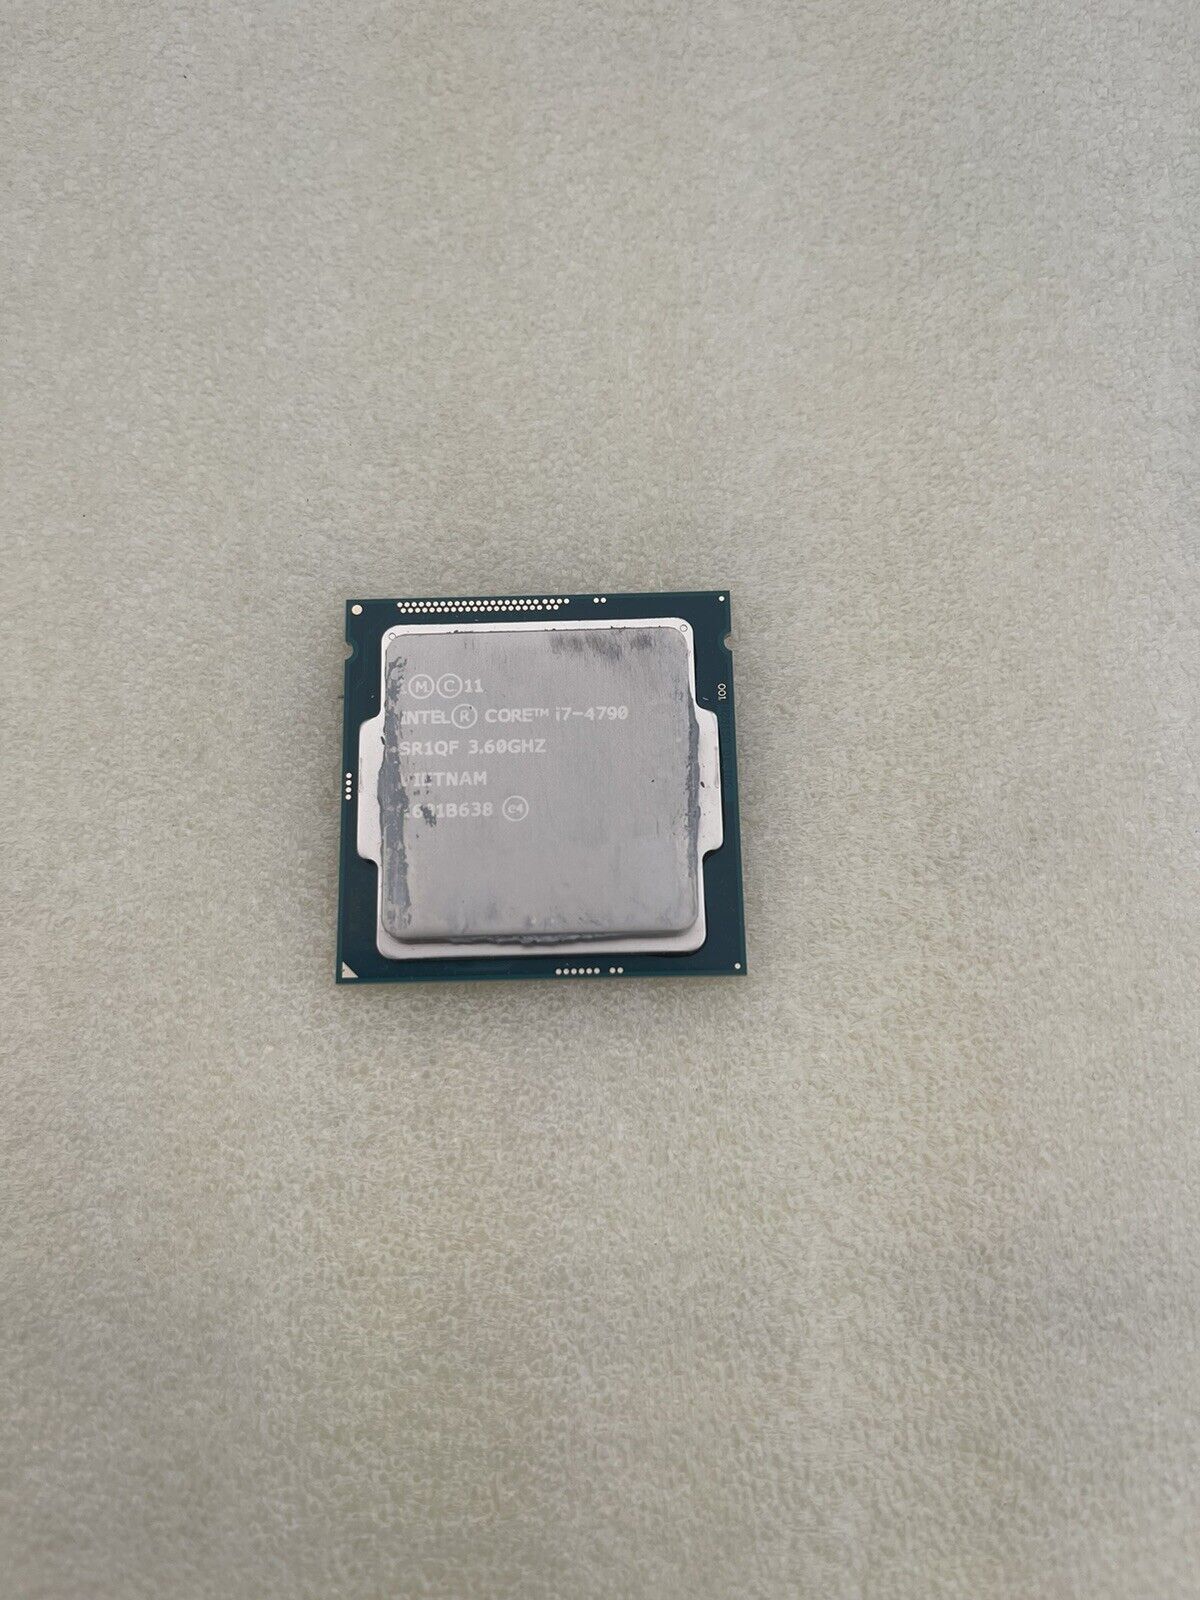 Intel Core i7-4790 3.60GHz Quad-Core CPU Processor SR1QF LGA1150 Socket